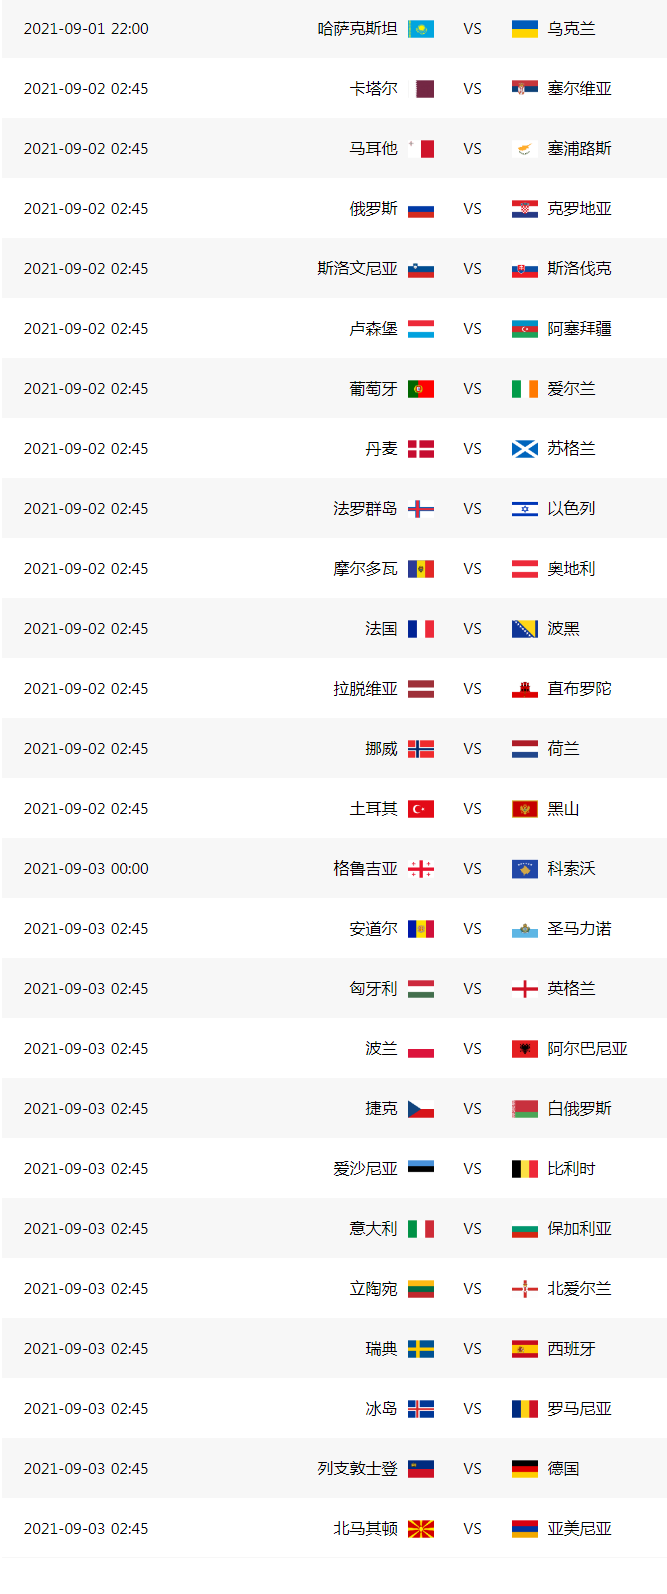 2014世界杯欧洲区预选赛 2022世界杯欧洲区预选赛小组积分表、赛程表(9月1日)